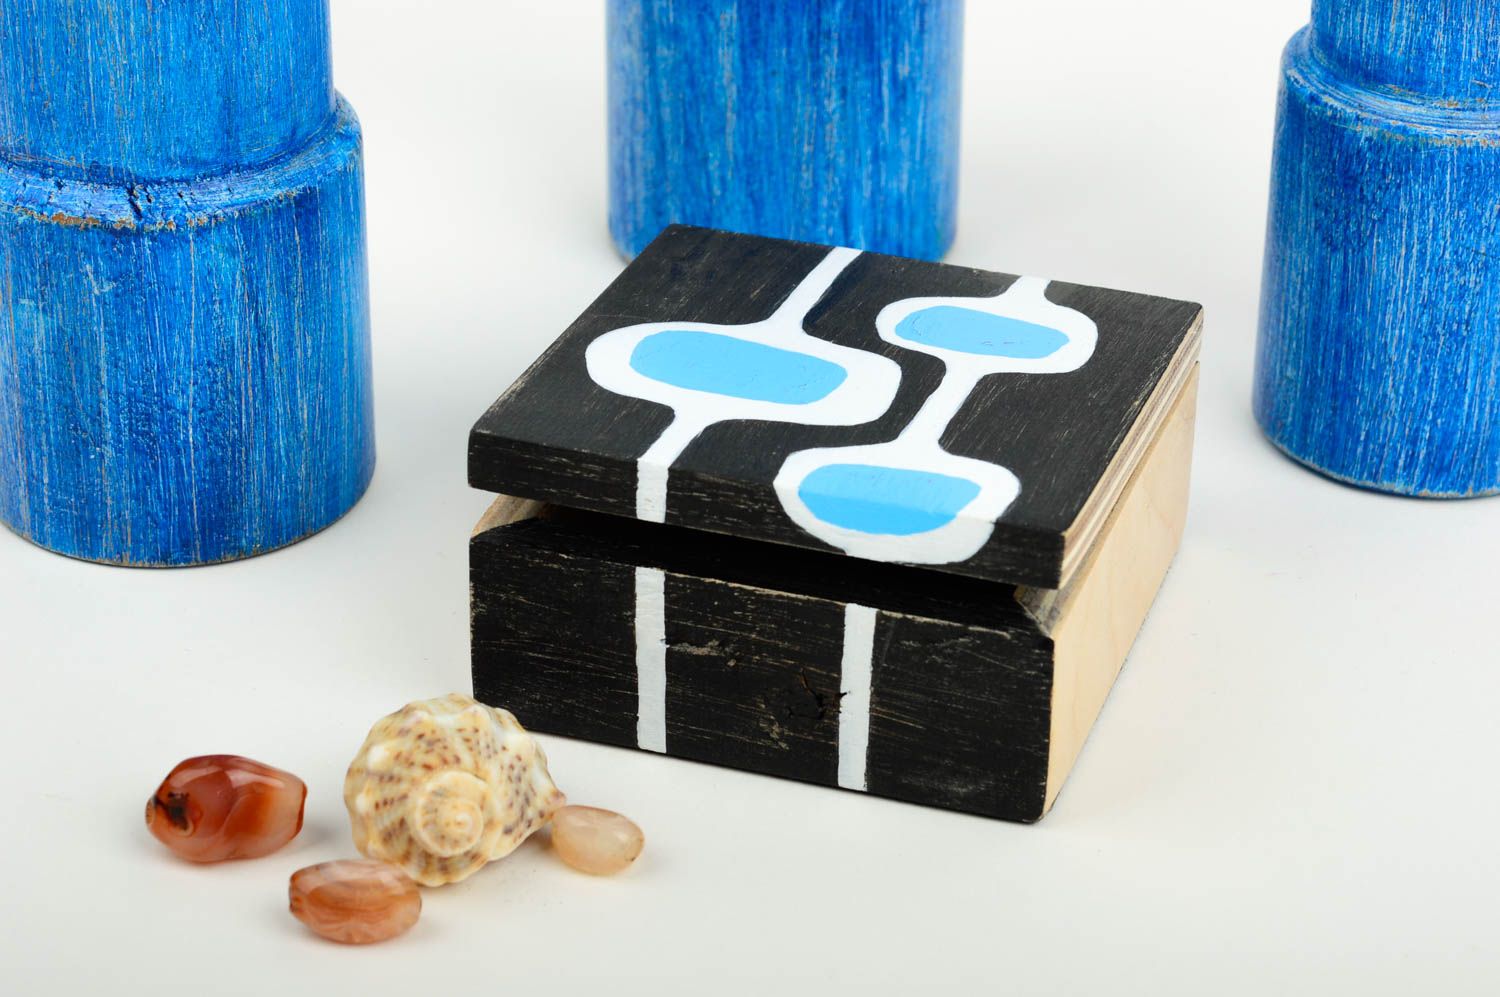 Handmade designer jewelry box unusual wooden box cute accessories table decor photo 1